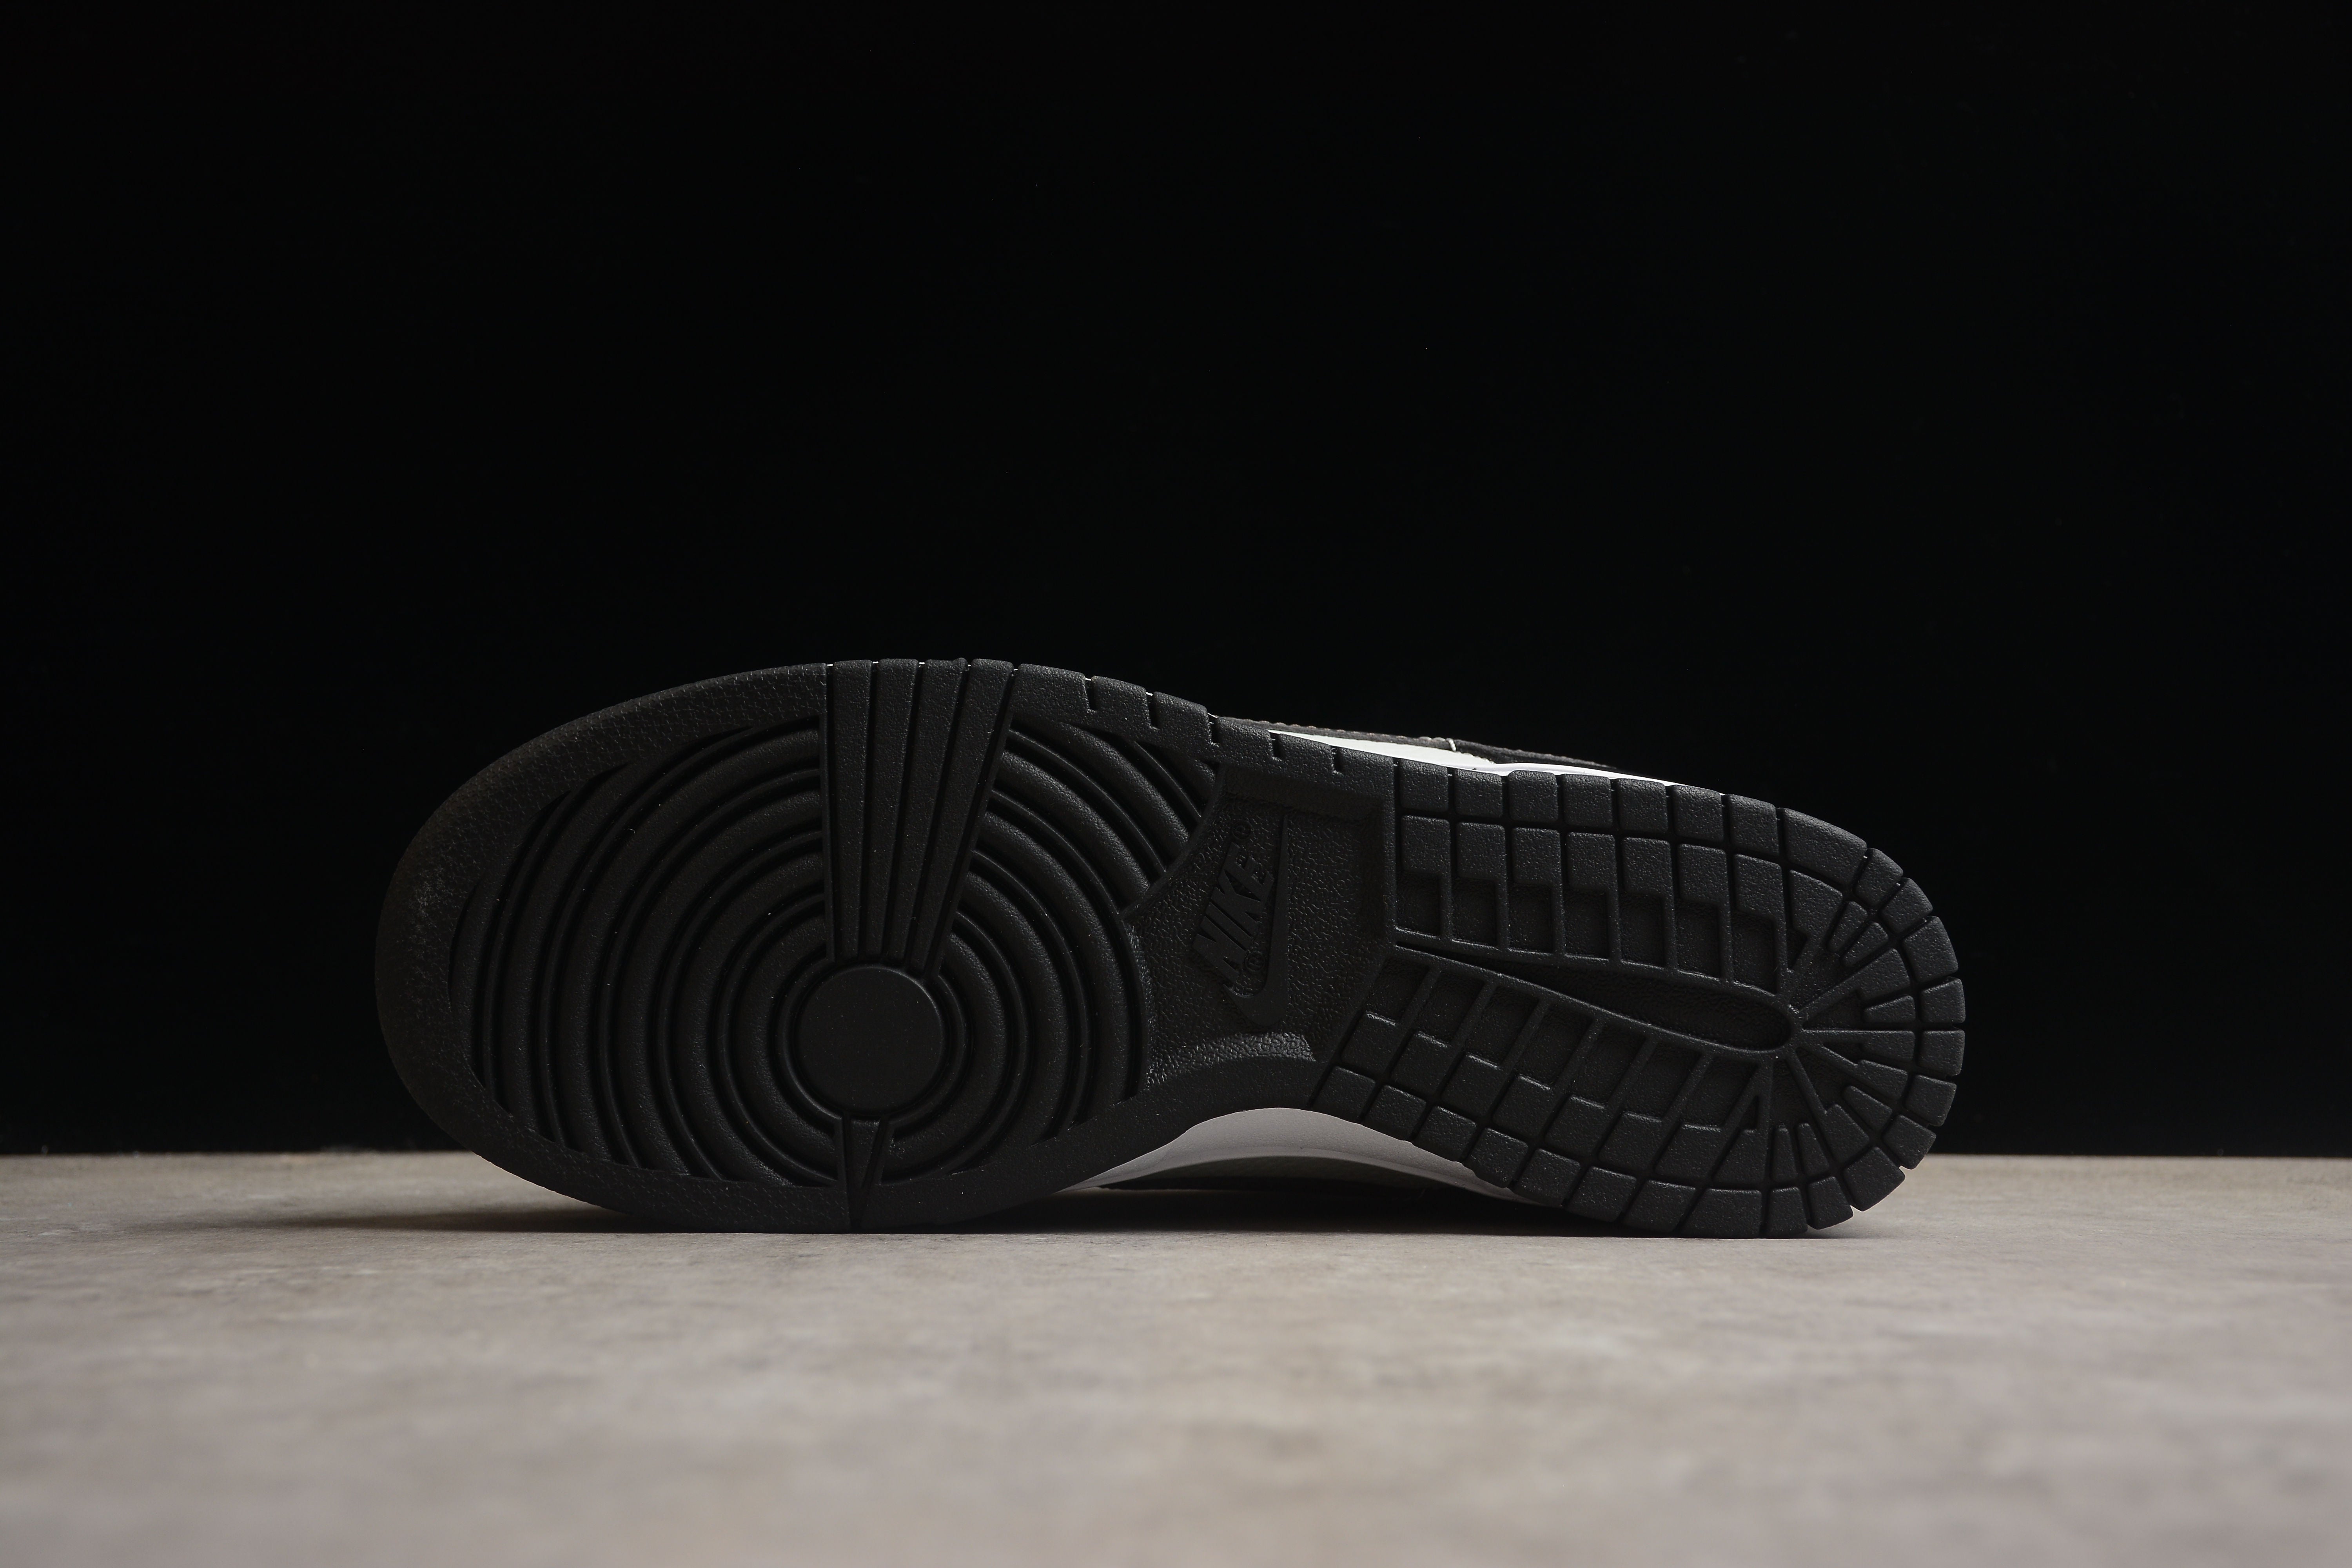 Nike SB dunk low black grey orange shoes